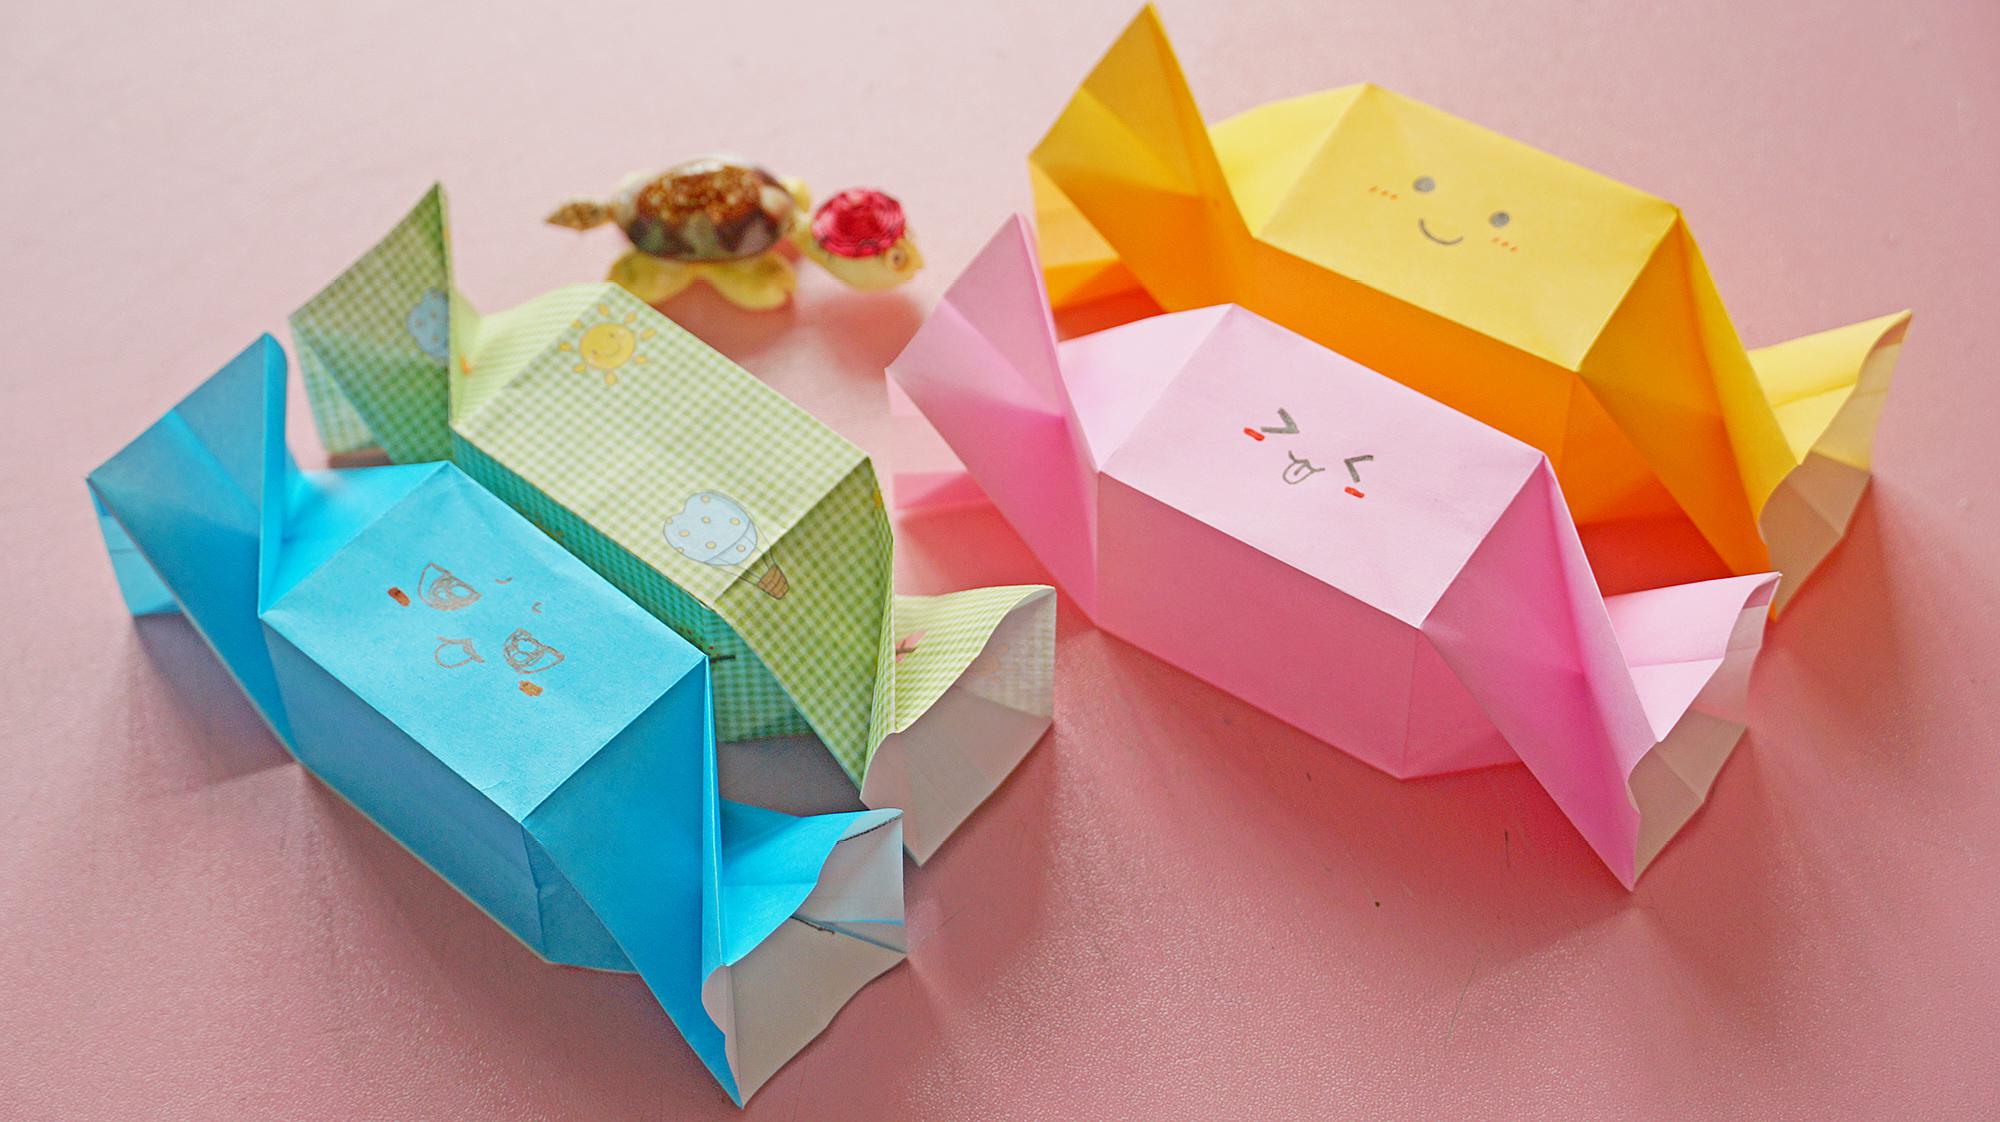 简单的折纸糖果盲袋,一张纸就能折好,装些小礼物送朋友还不错!